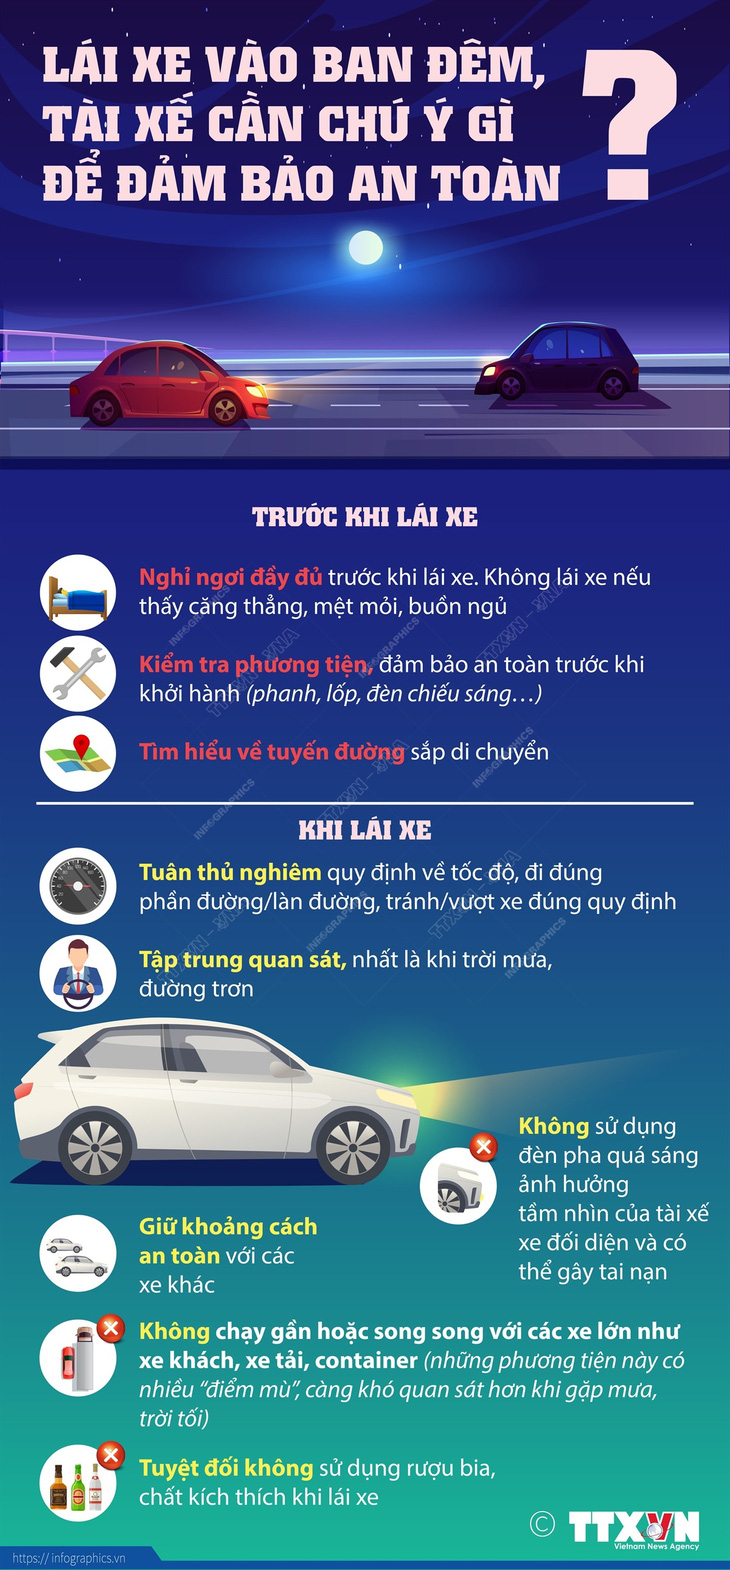 Lái xe ban đêm, tài xế cần chú ý gì để đảm bảo an toàn